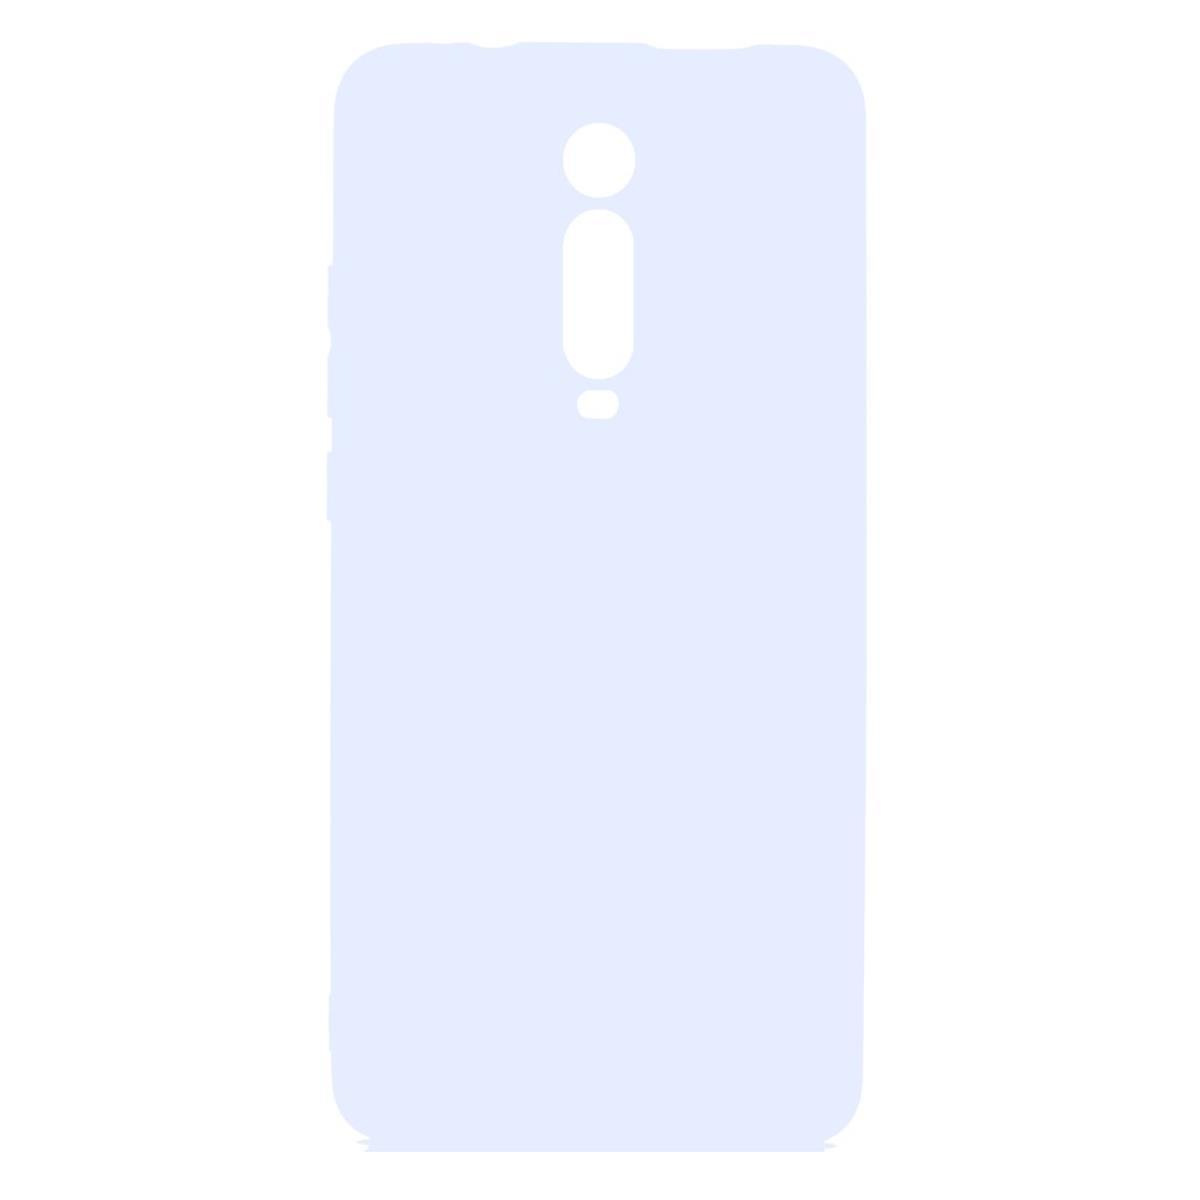 9T/Mi Handycase Backcover, Weiß 9T COVERKINGZ Mi Xiaomi, aus Silikon, Pro,